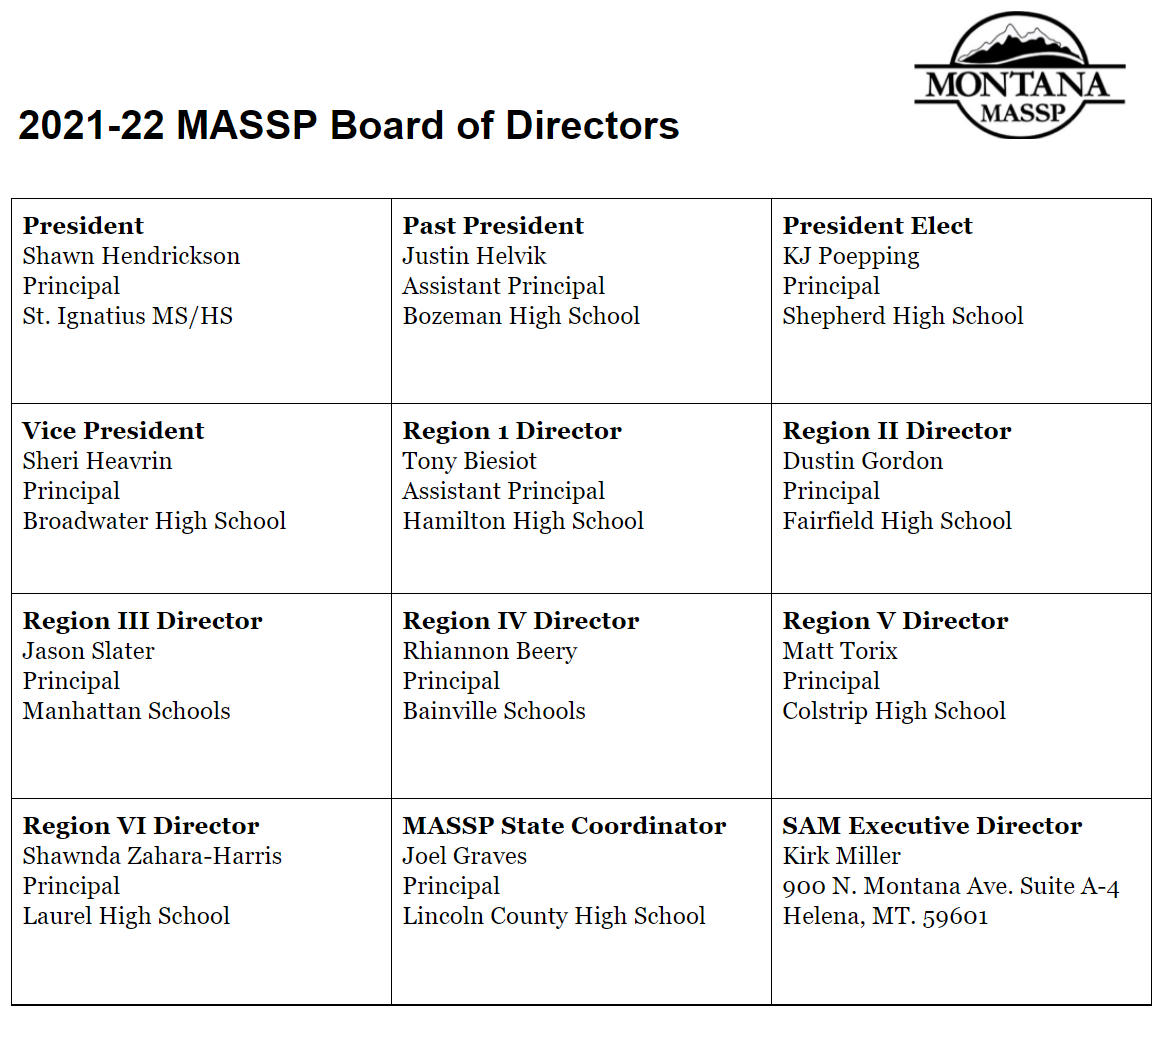 2021-22 MASSP Board Roster image.png - 54.08 Kb